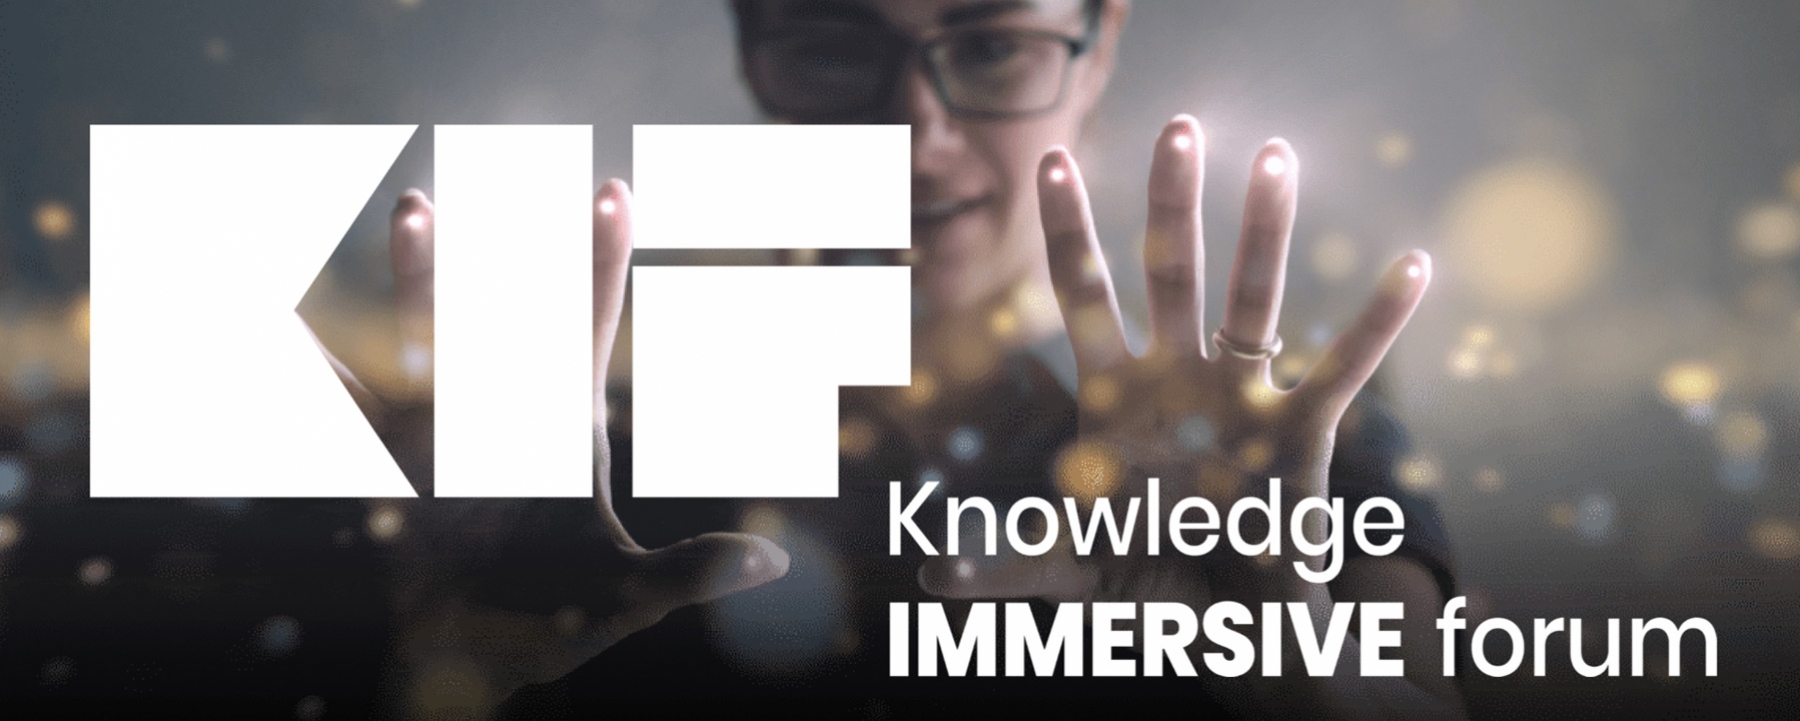 KIF Knowledge IMMERSIVE forum du 1er au 4 septembre 2021